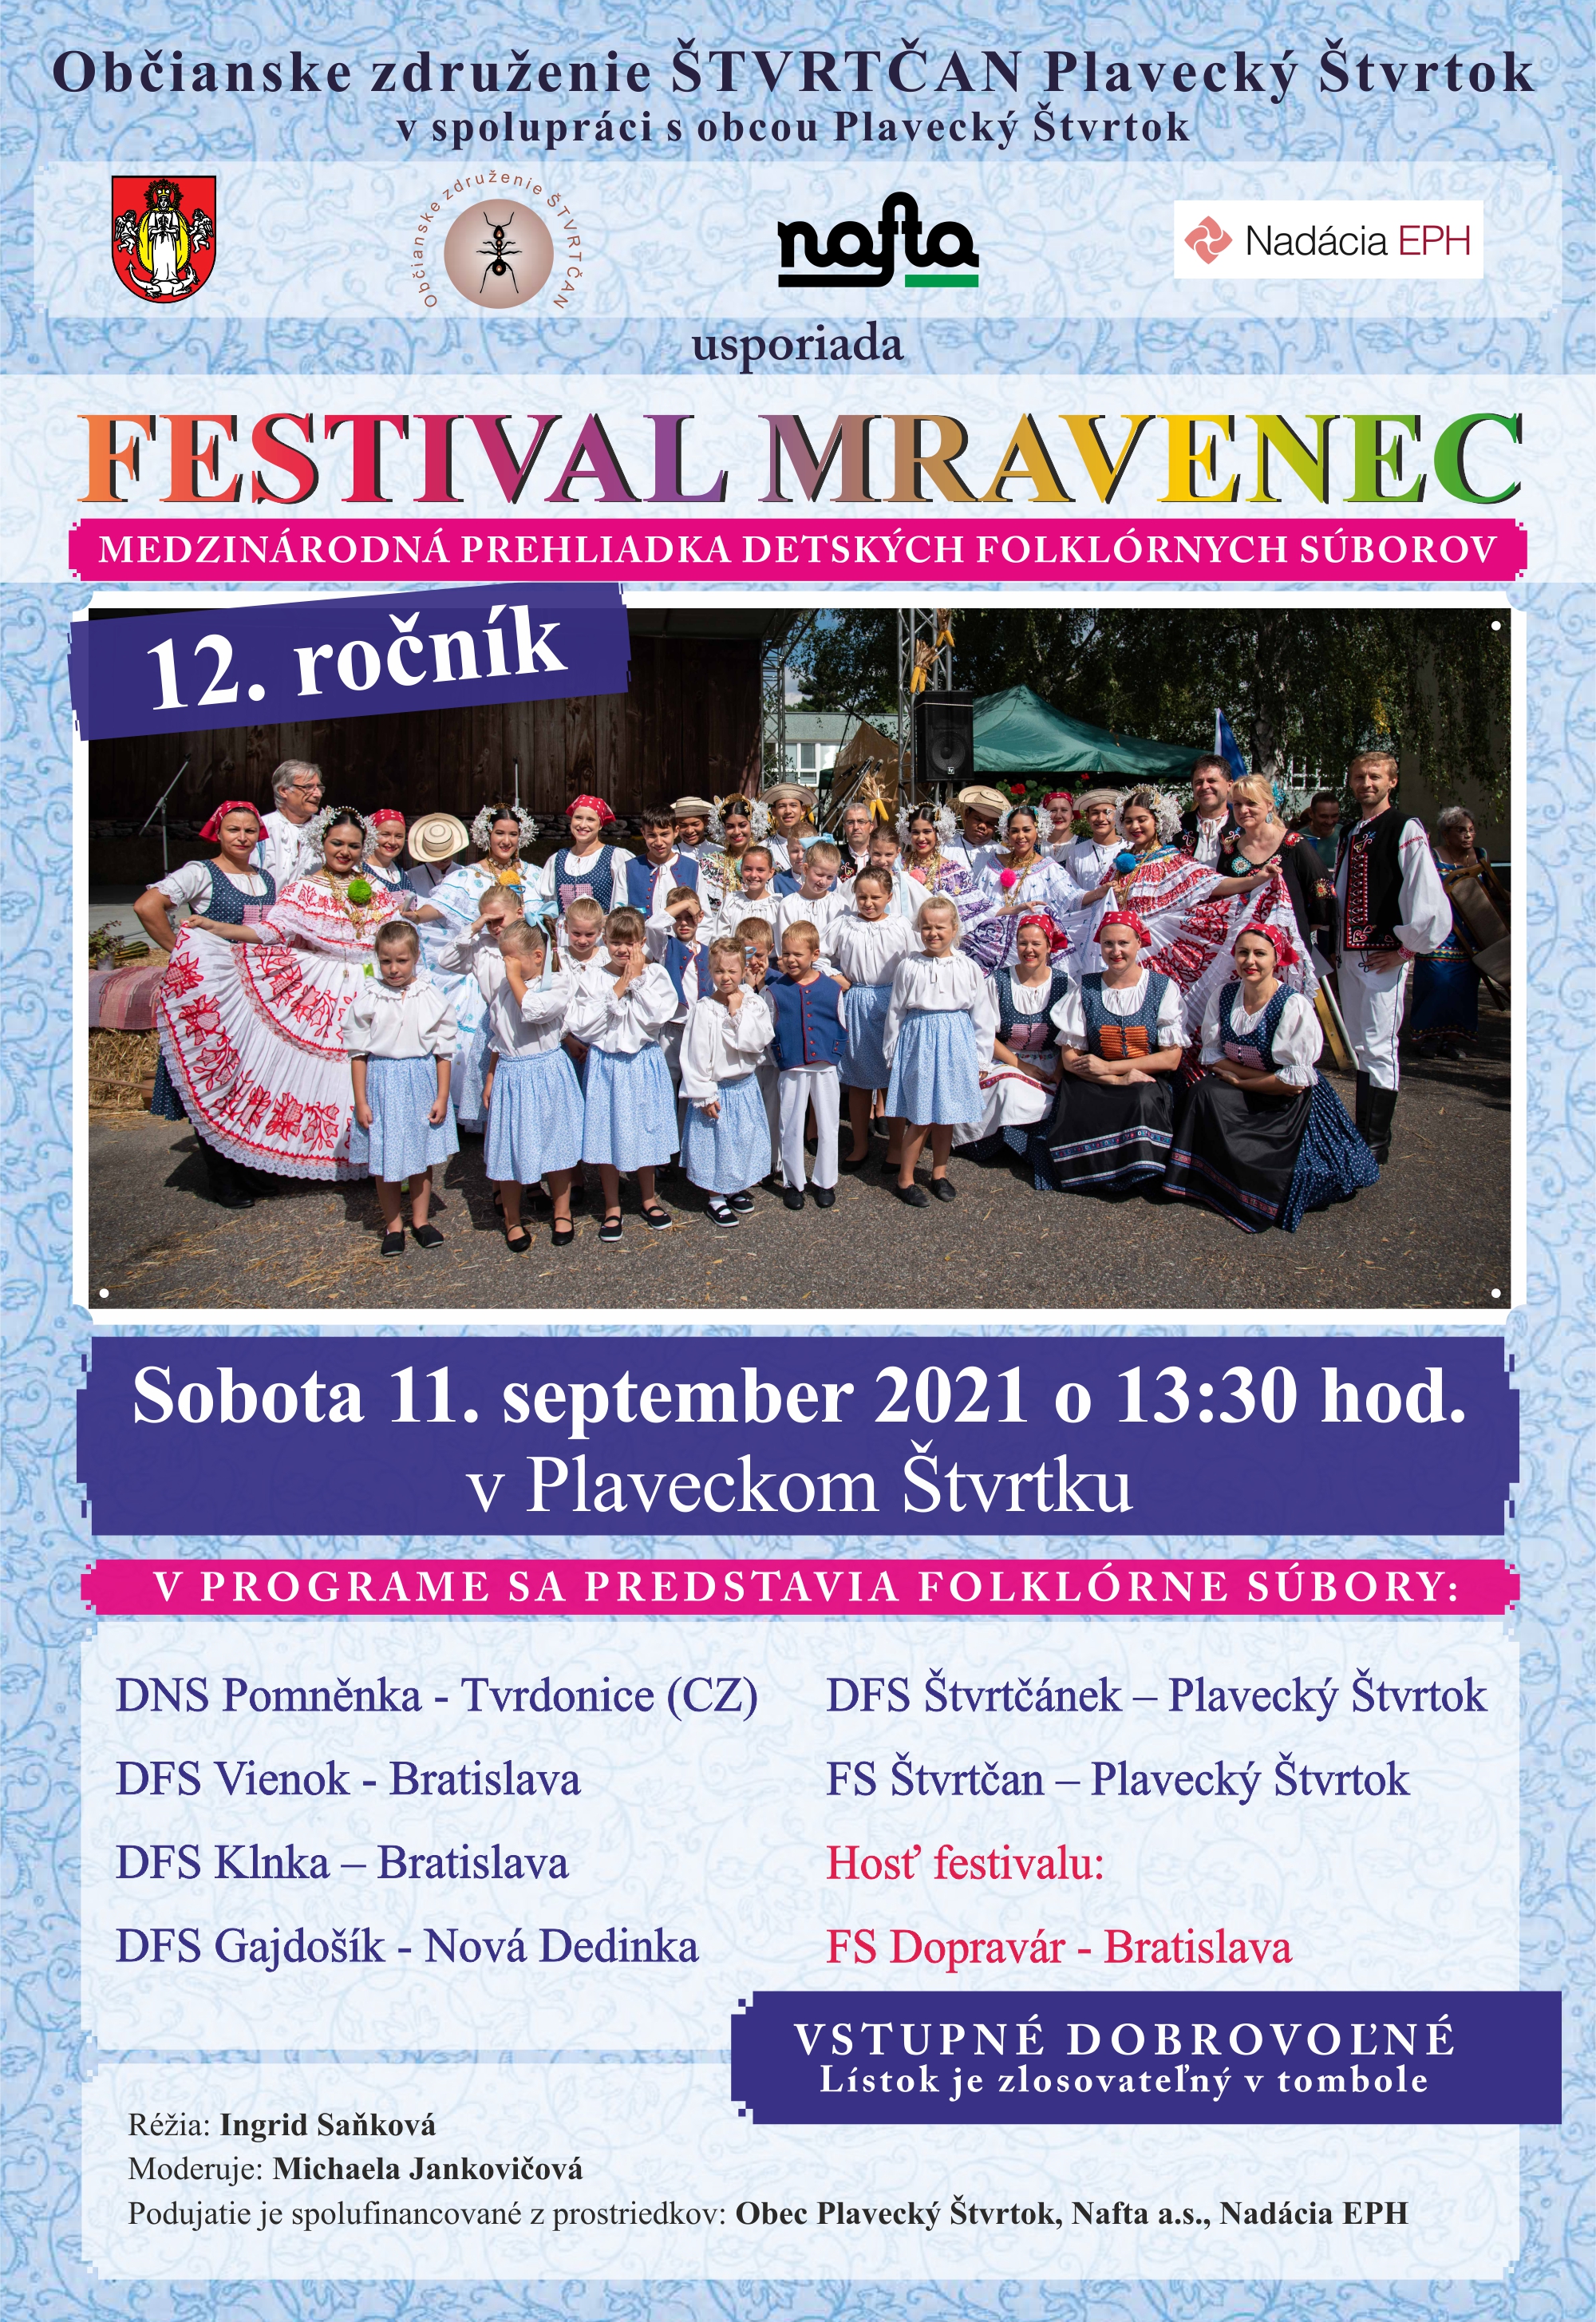 NOVÉ - - - Festival Mravenec 2021 Plavecký Štvrtok - 12. ročník medzinárodnej prehliadky detských folklórnych súborov